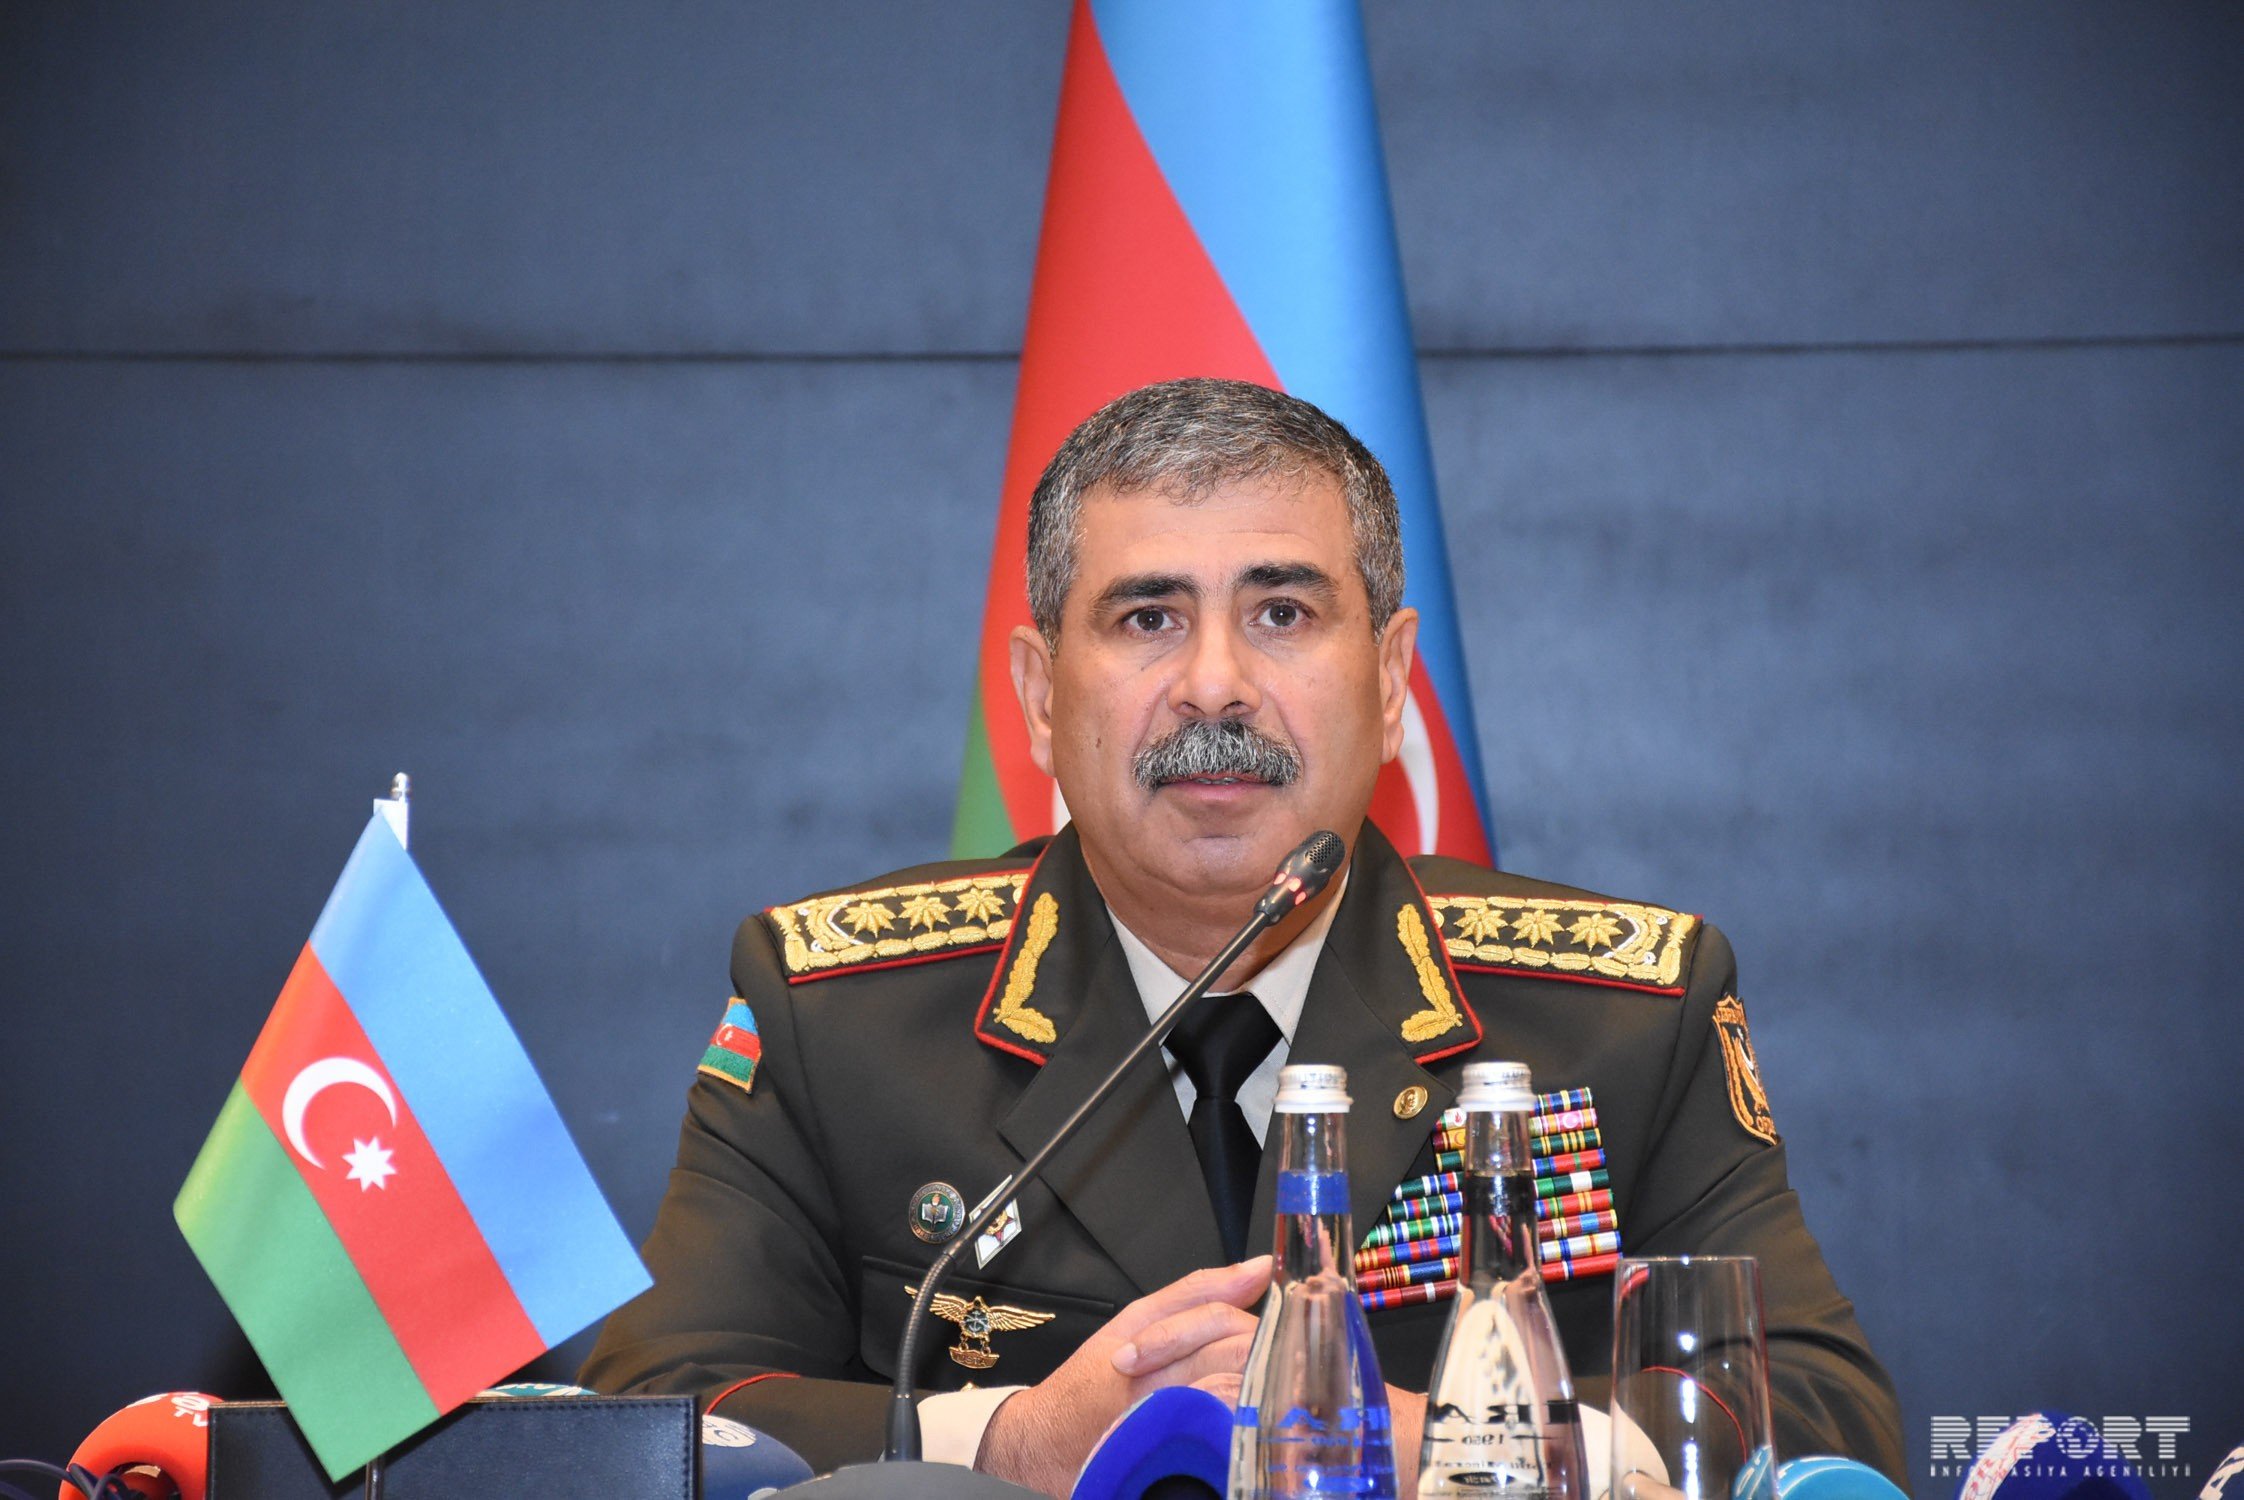 Müdafiə naziri: "2021-ci il də daxil olmaqla Azərbaycan Ordusunun bütün infrastrukturunun yenilənməsi prosesi tam başa çatdırılacaq"